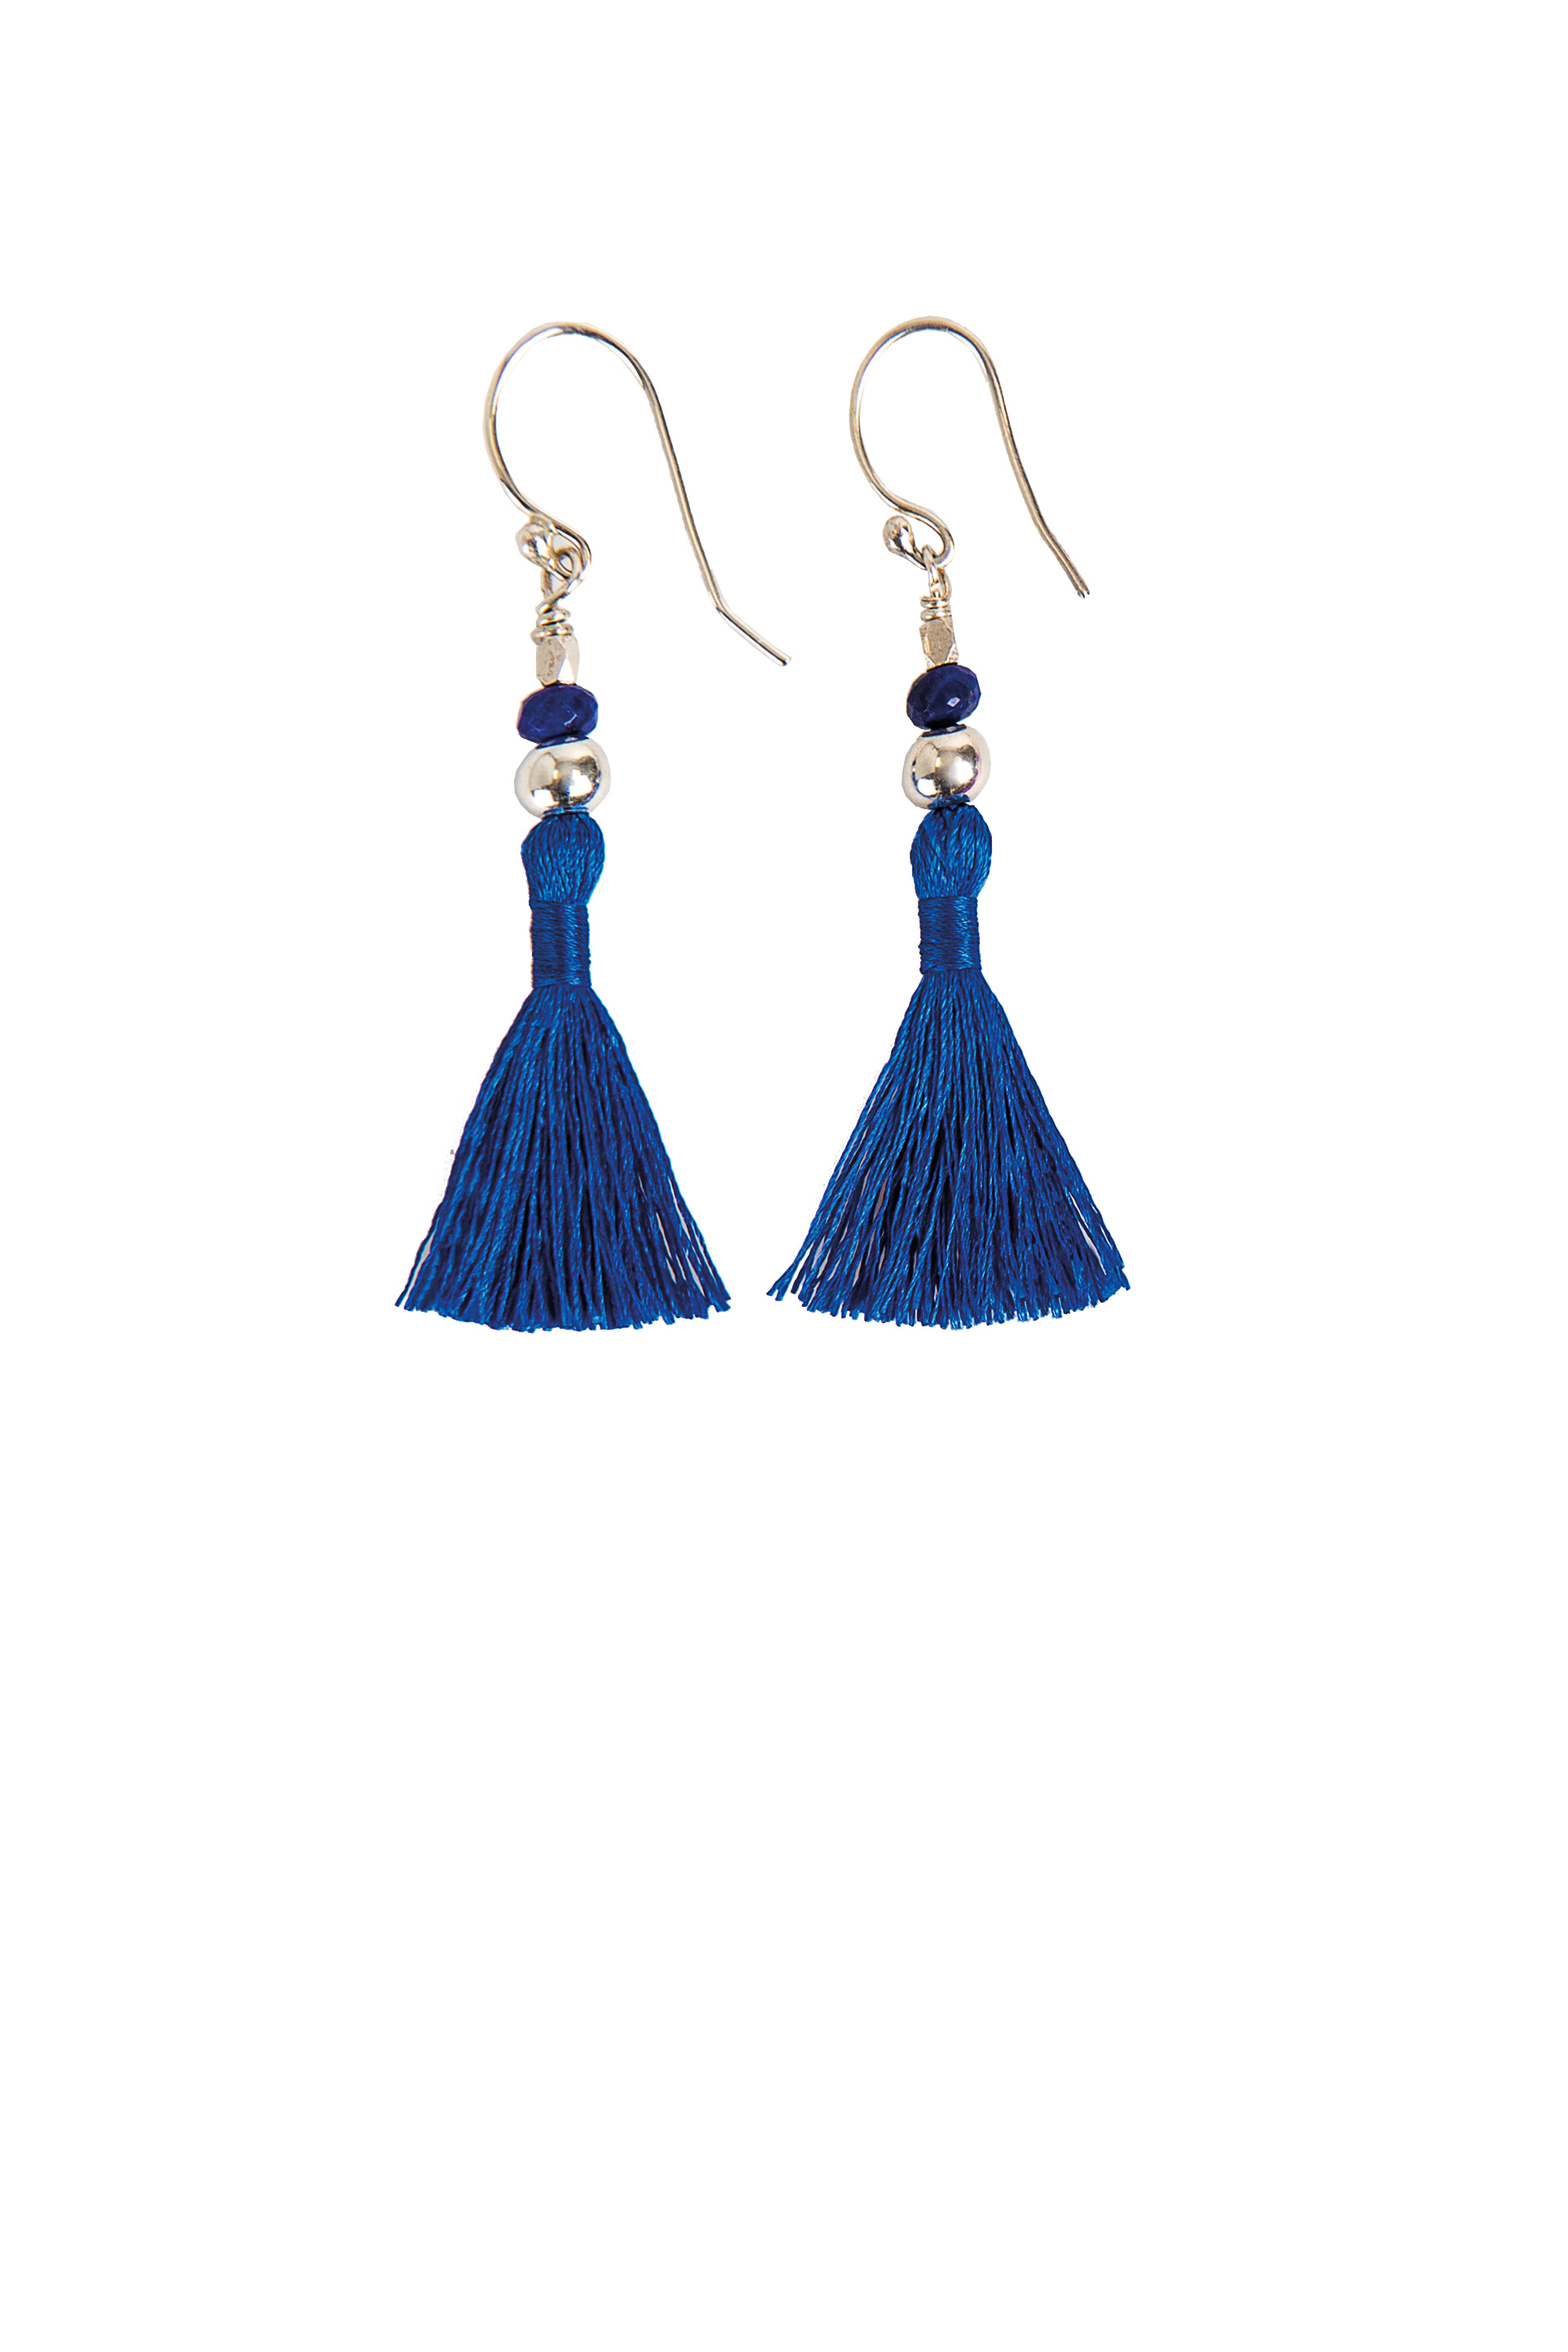 cr100_tassel_earrings_cobalt_blue_lapis_lazuli_white_background.jpg